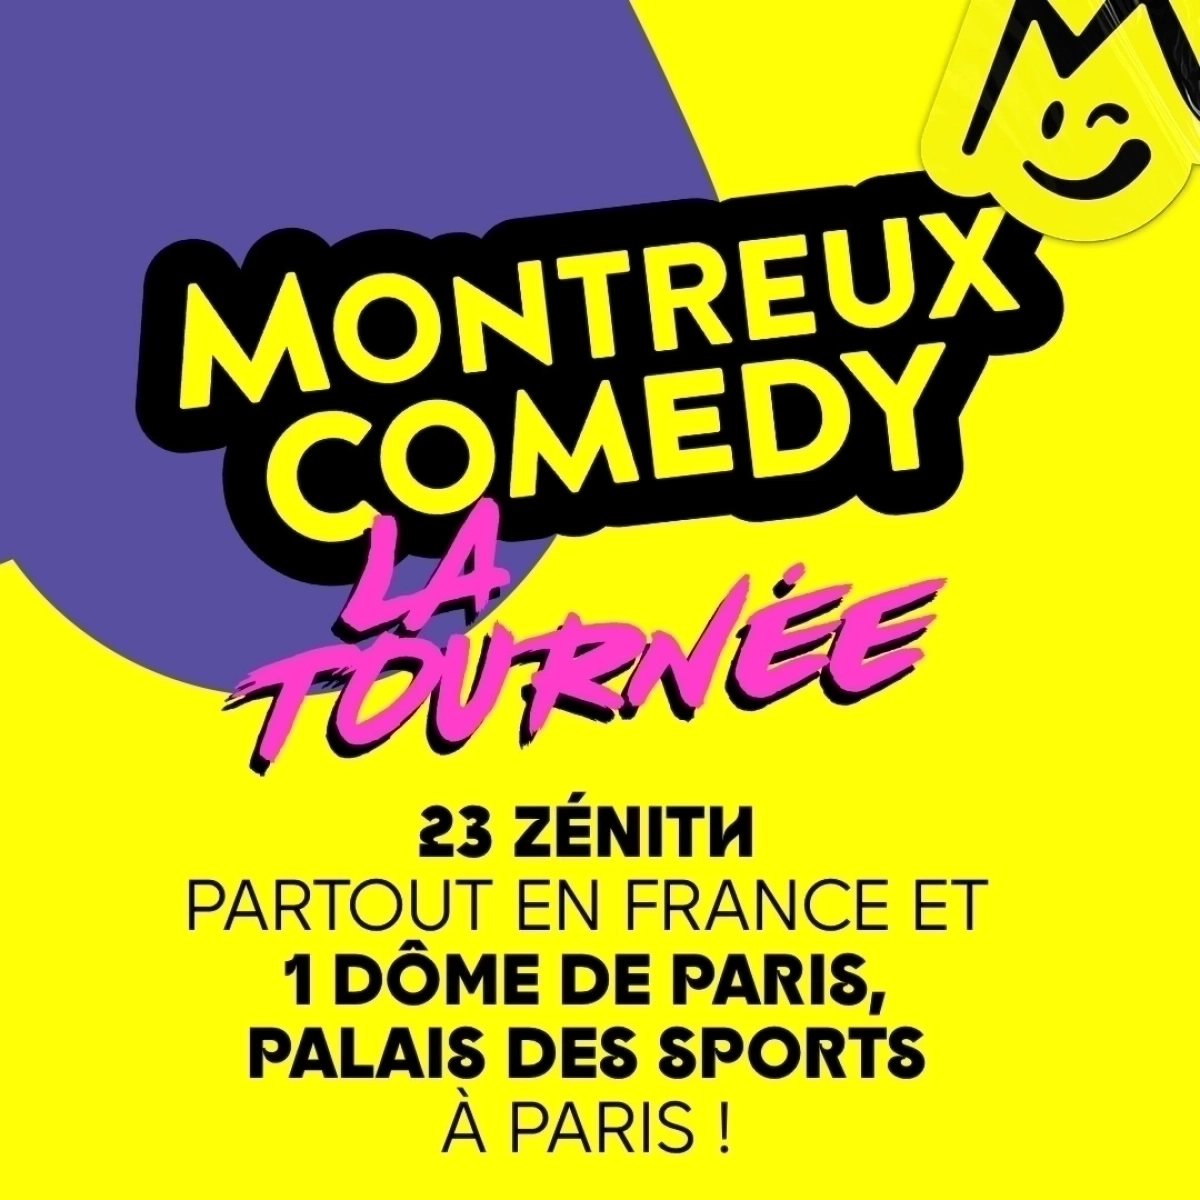 Montreux Comedy - La Tournée en Narbonne Arena Tickets